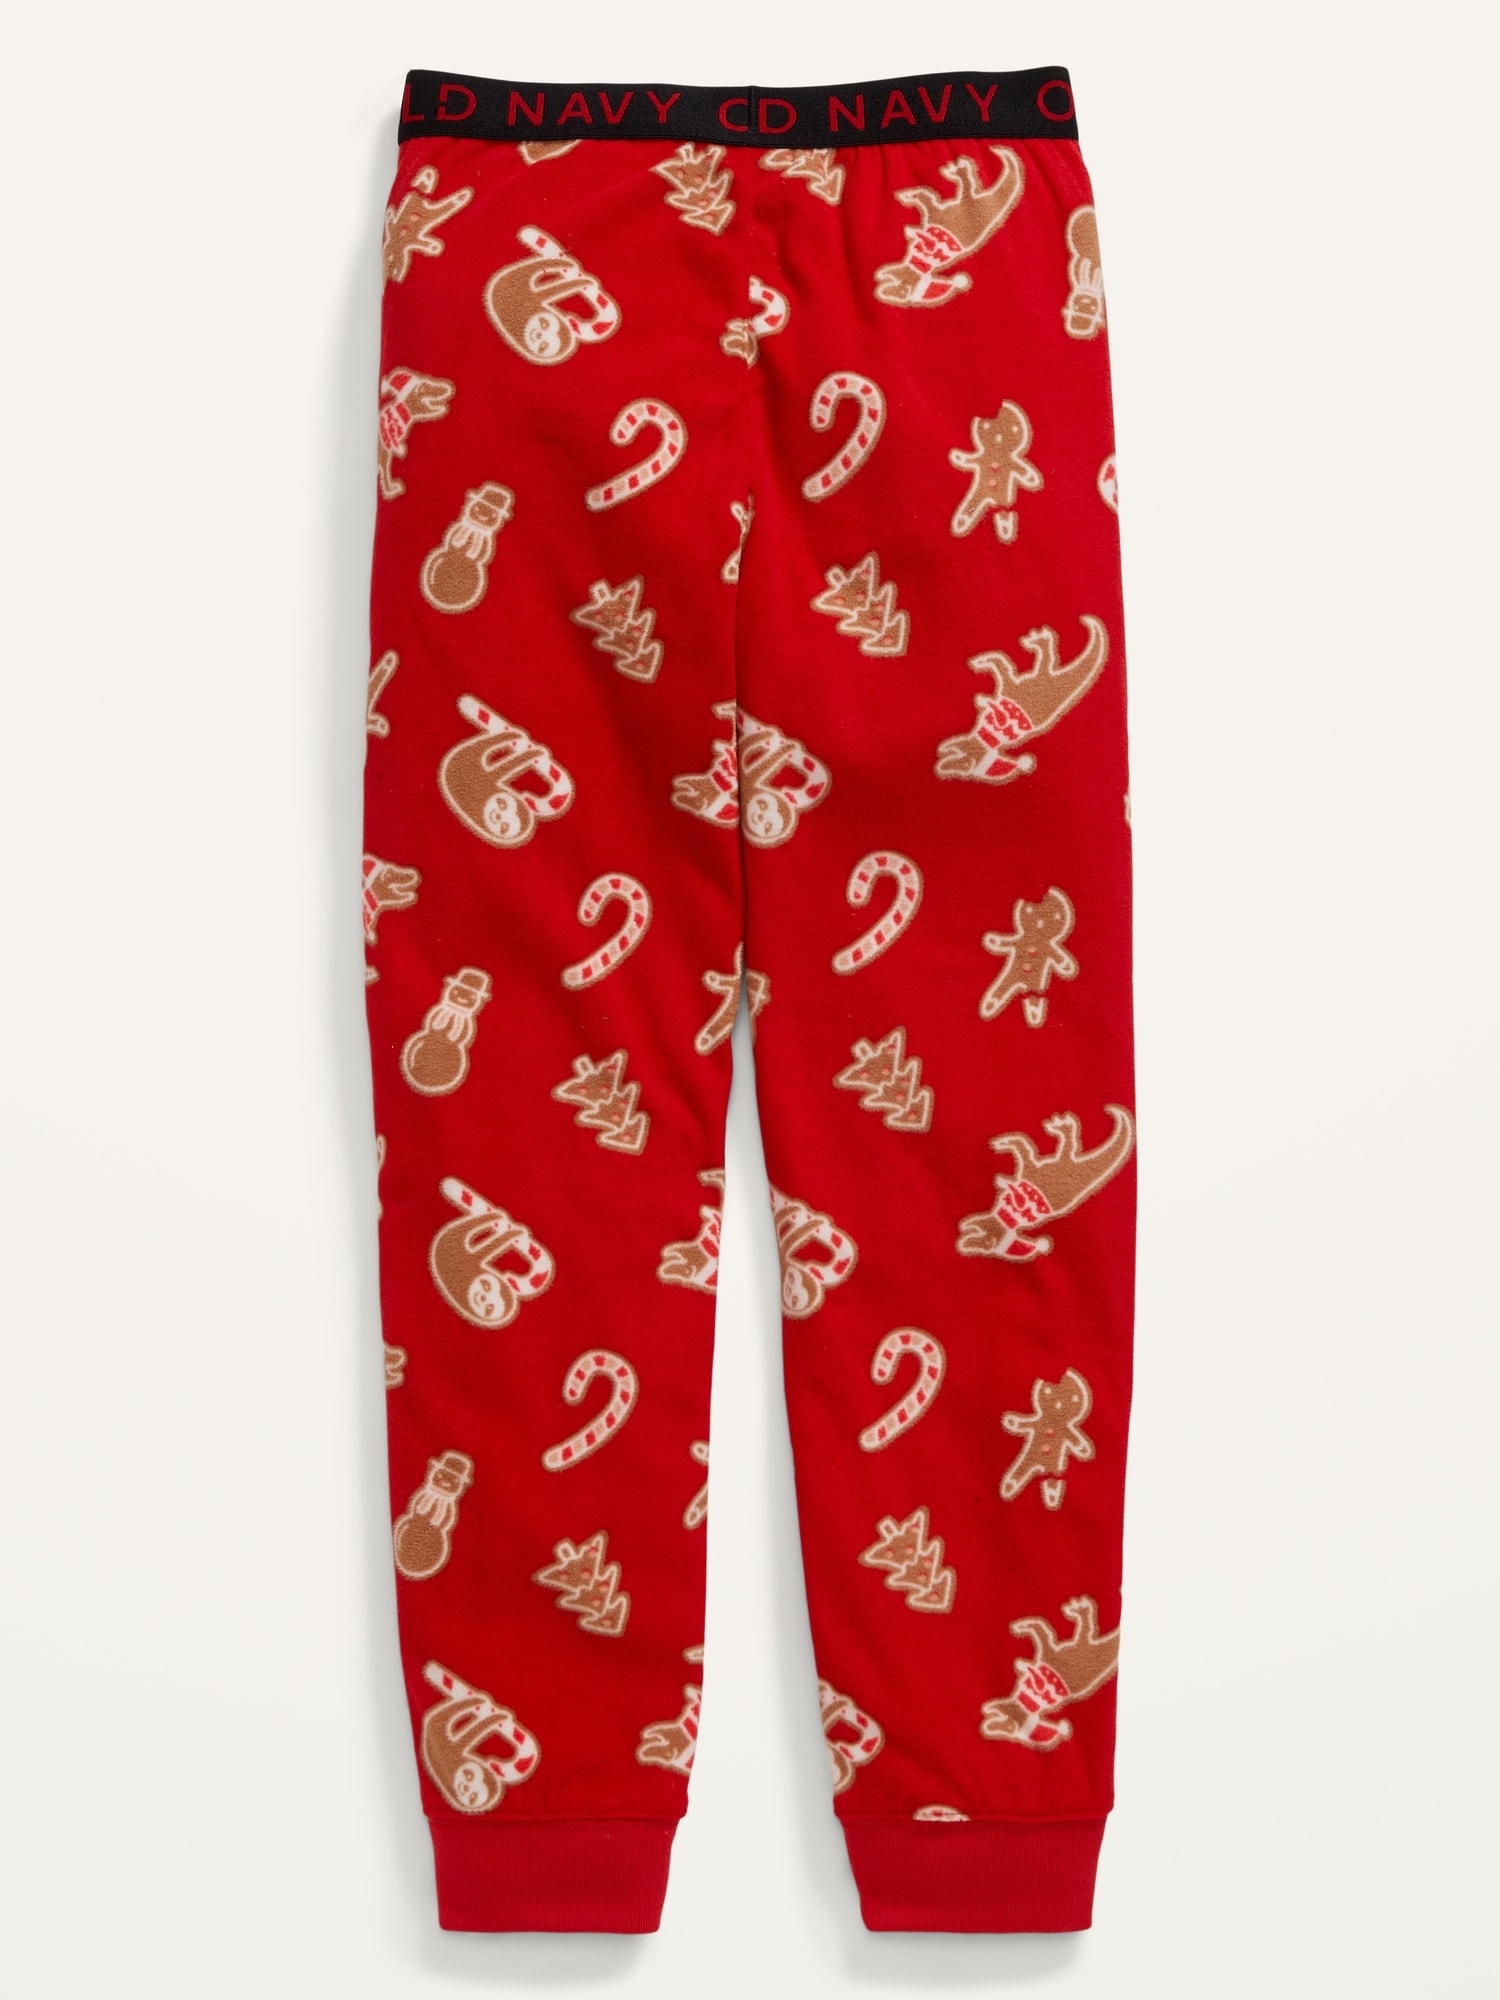 Printed Micro Fleece Pajama Jogger Pants For Boys | Old Navy